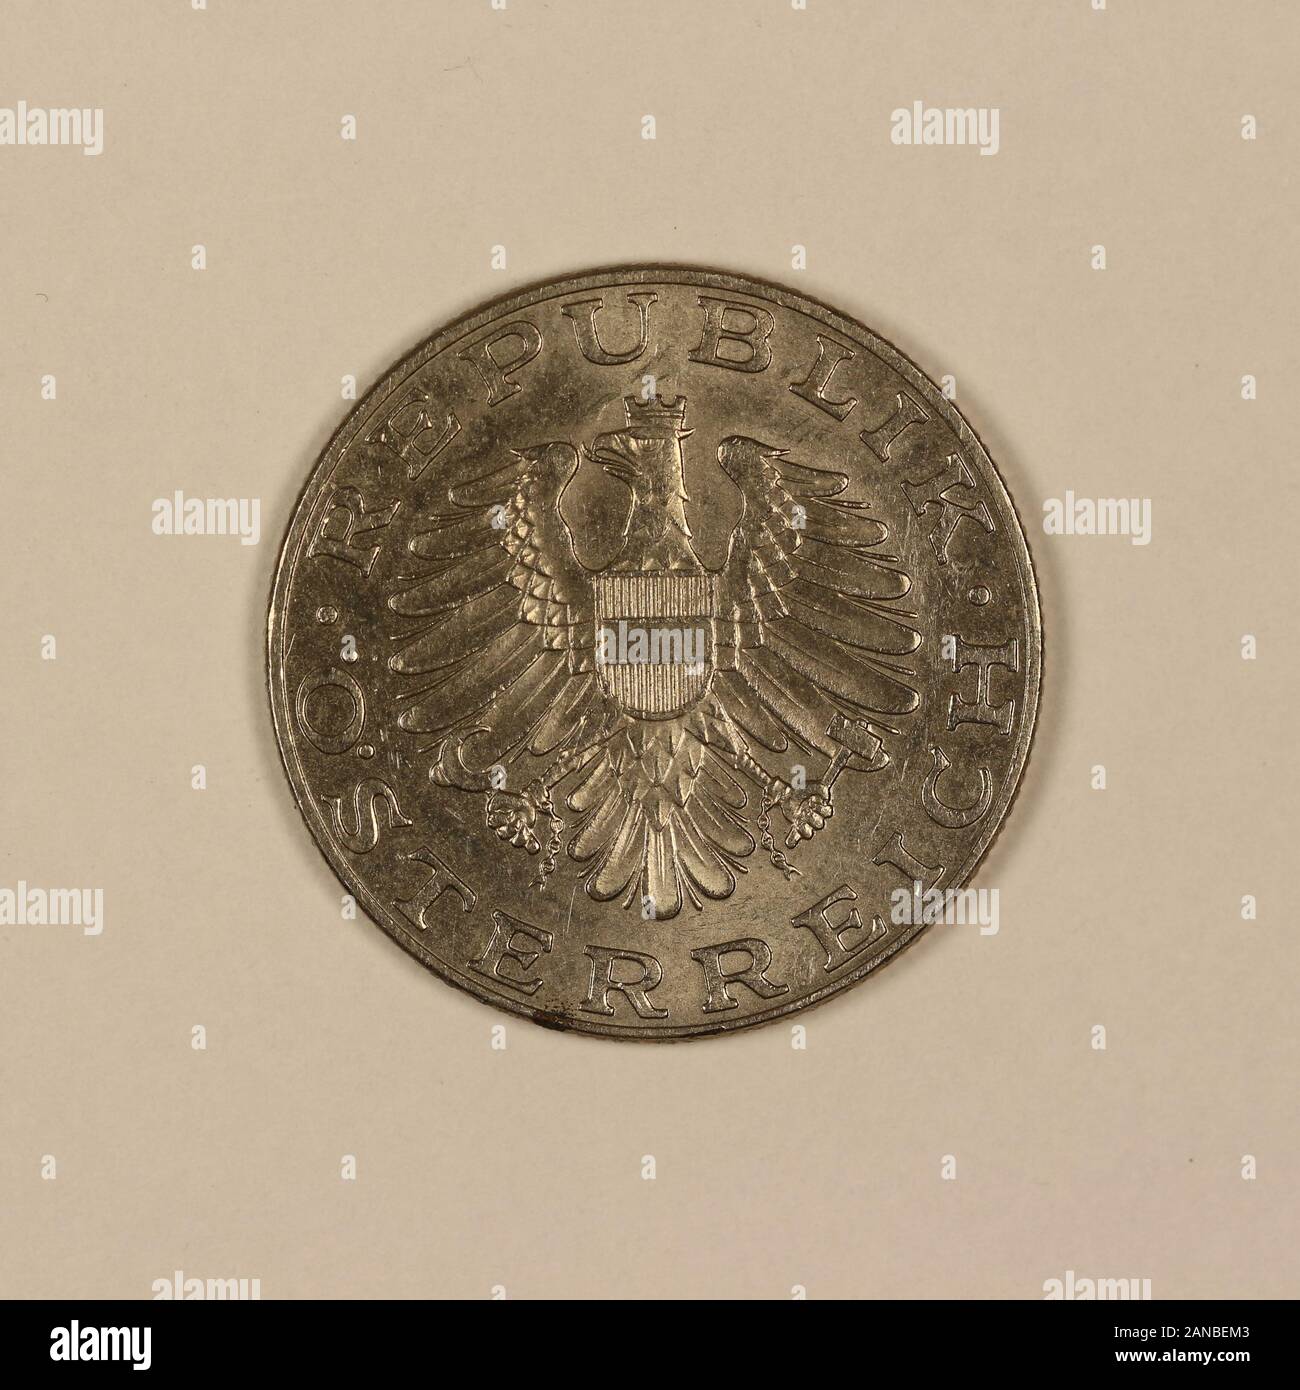 Rückseite einer ehemaligen Österreichischen 10 Schilling Münze Foto Stock